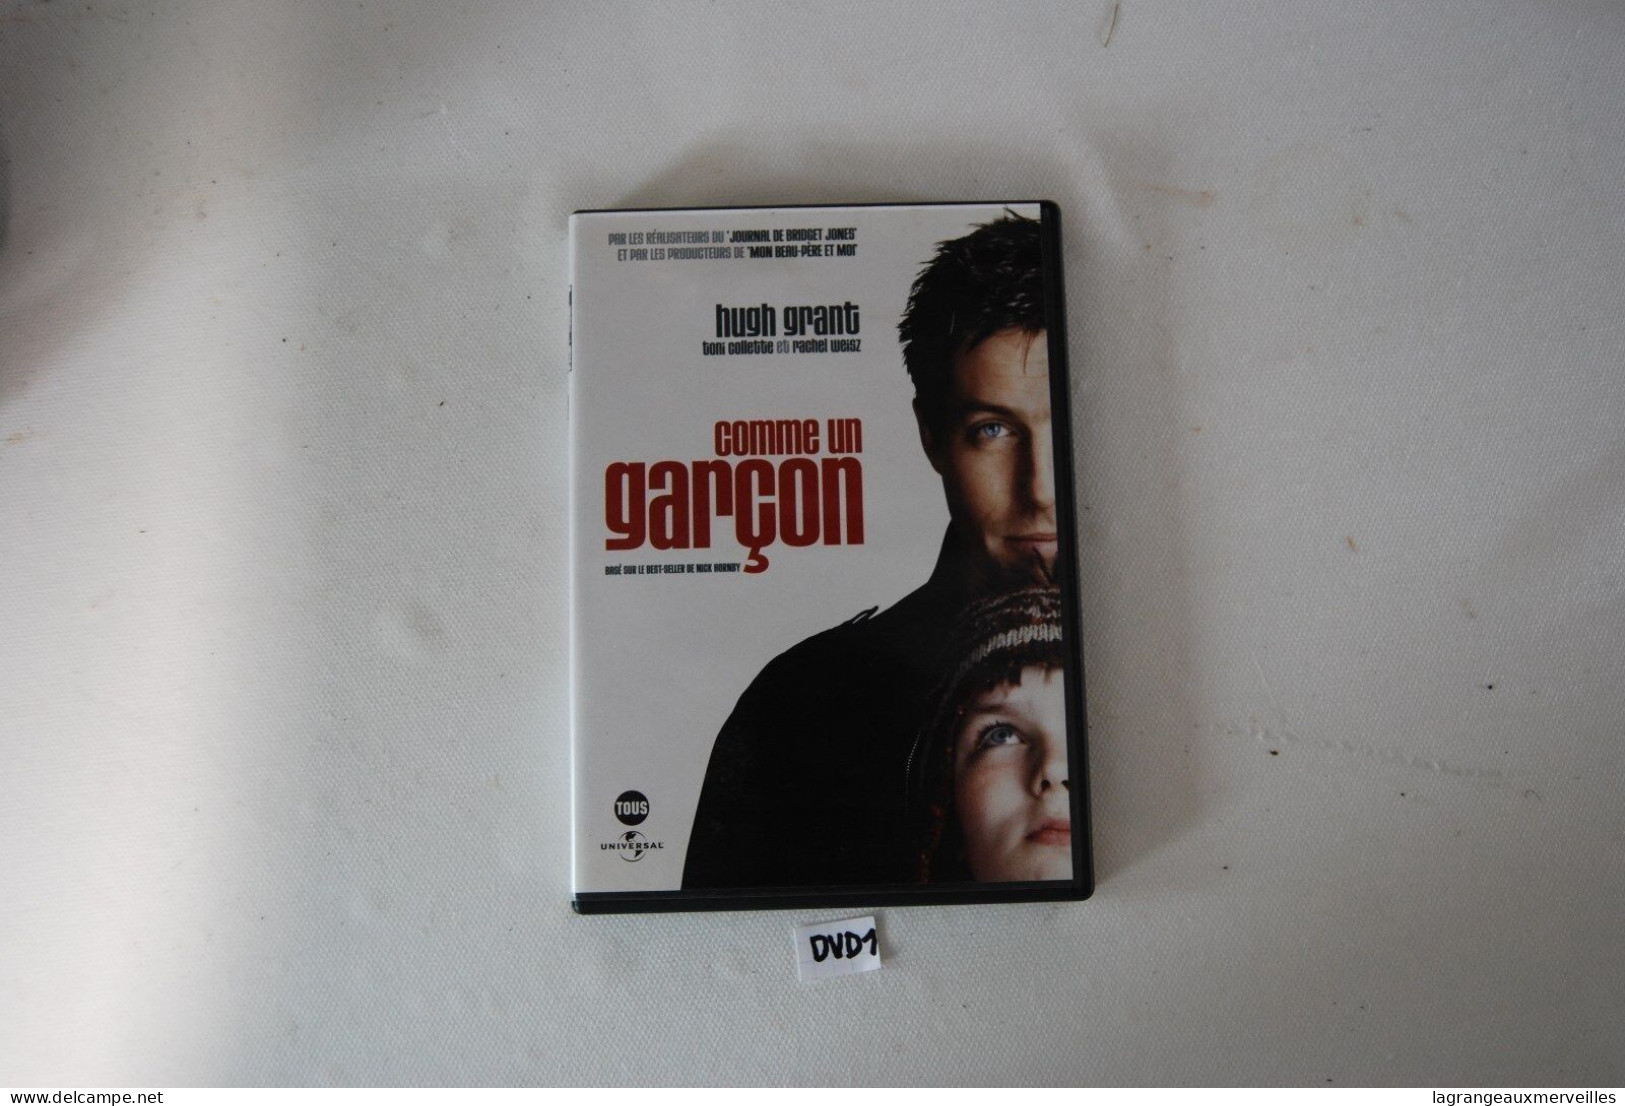 DVD 1 - COMME UN GARCON - HUGH GRANT - Kinderen & Familie